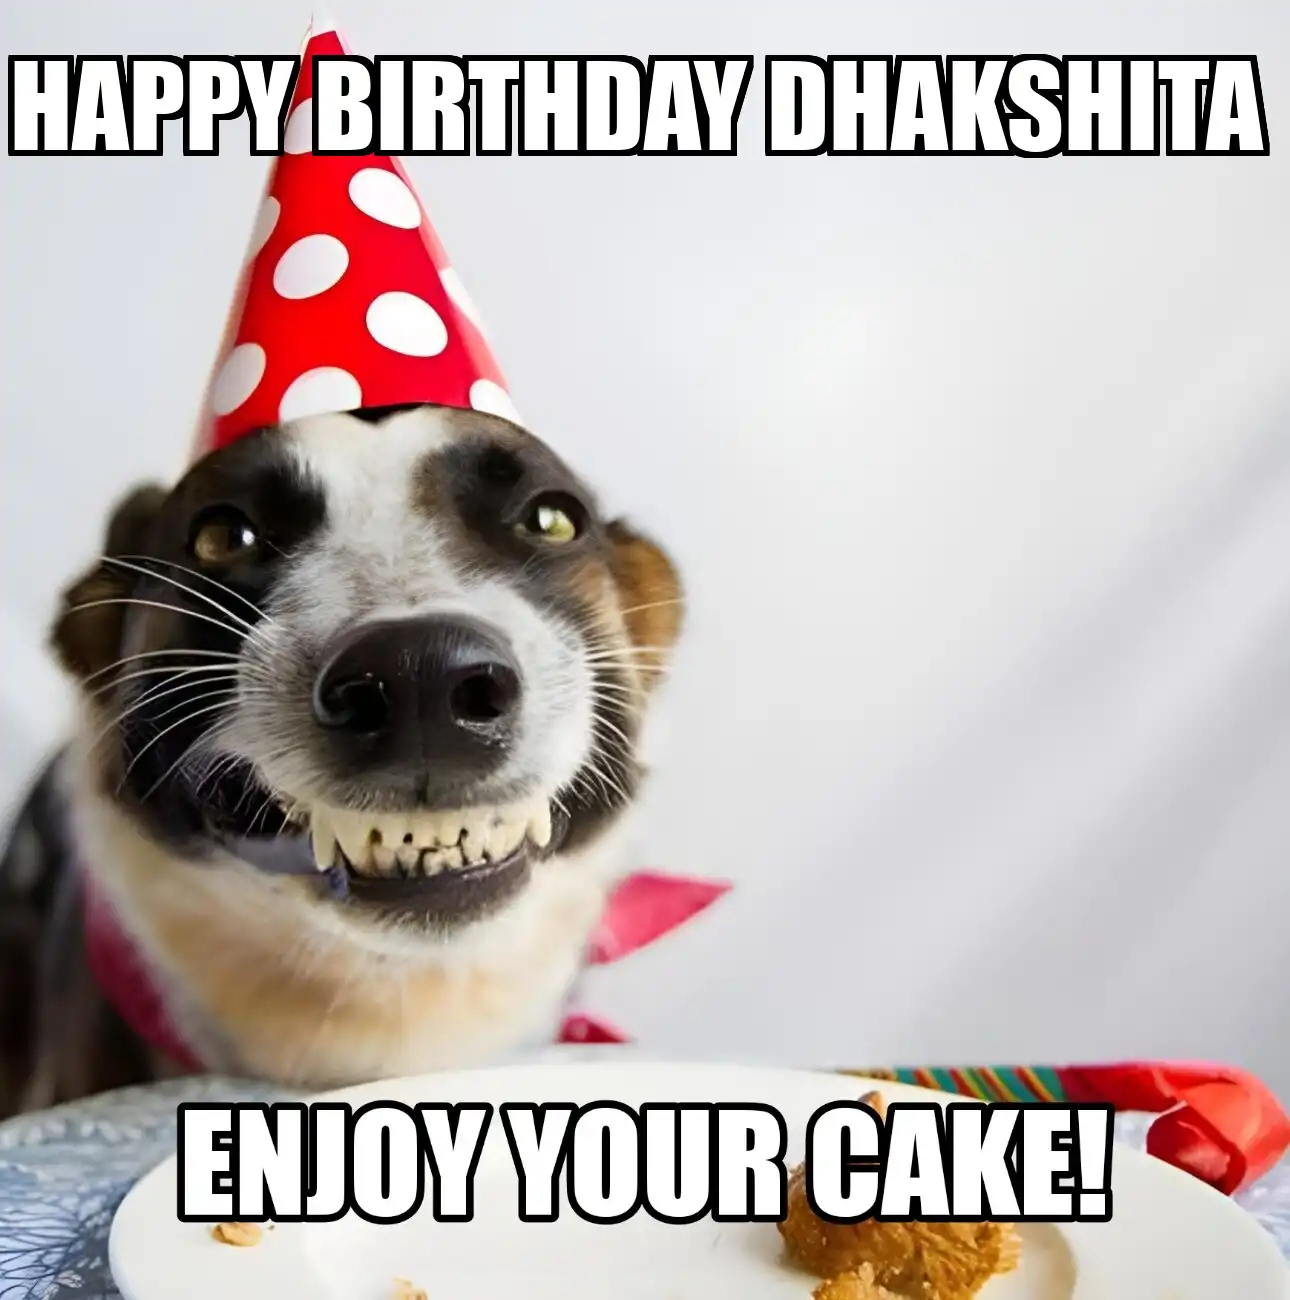 Happy Birthday Dhakshita Enjoy Your Cake Dog Meme